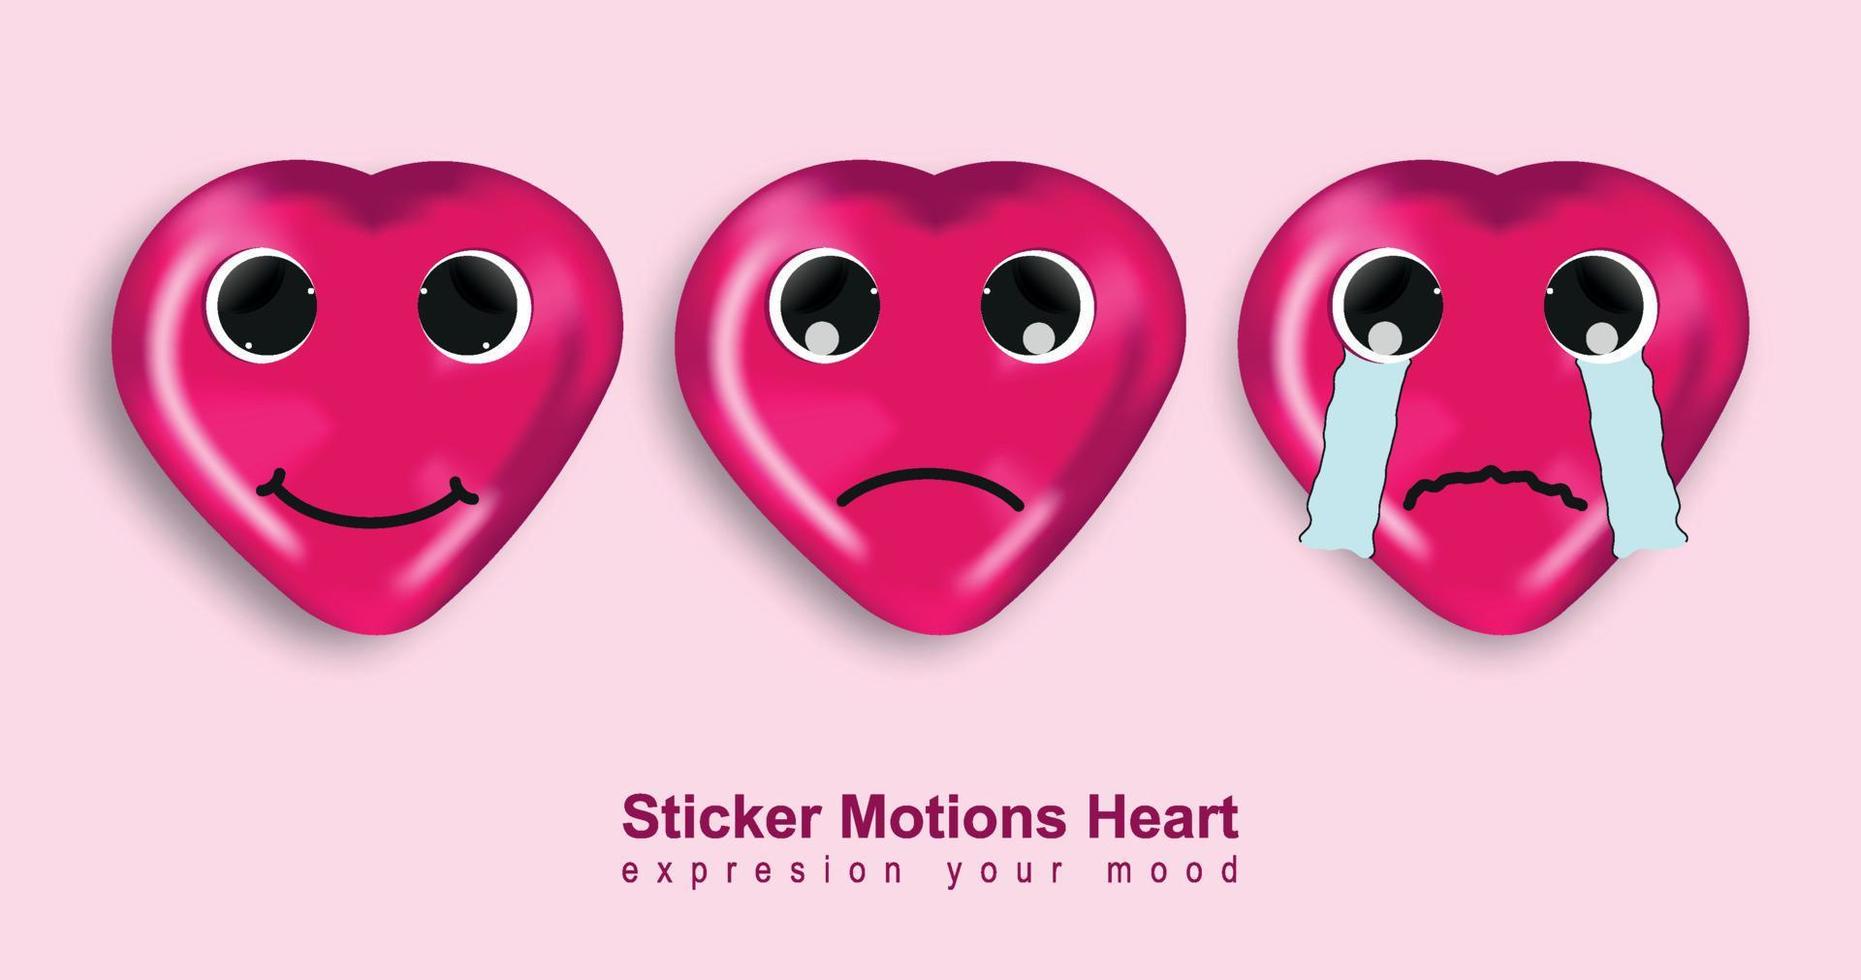 3D heart emoticon pink color vector file